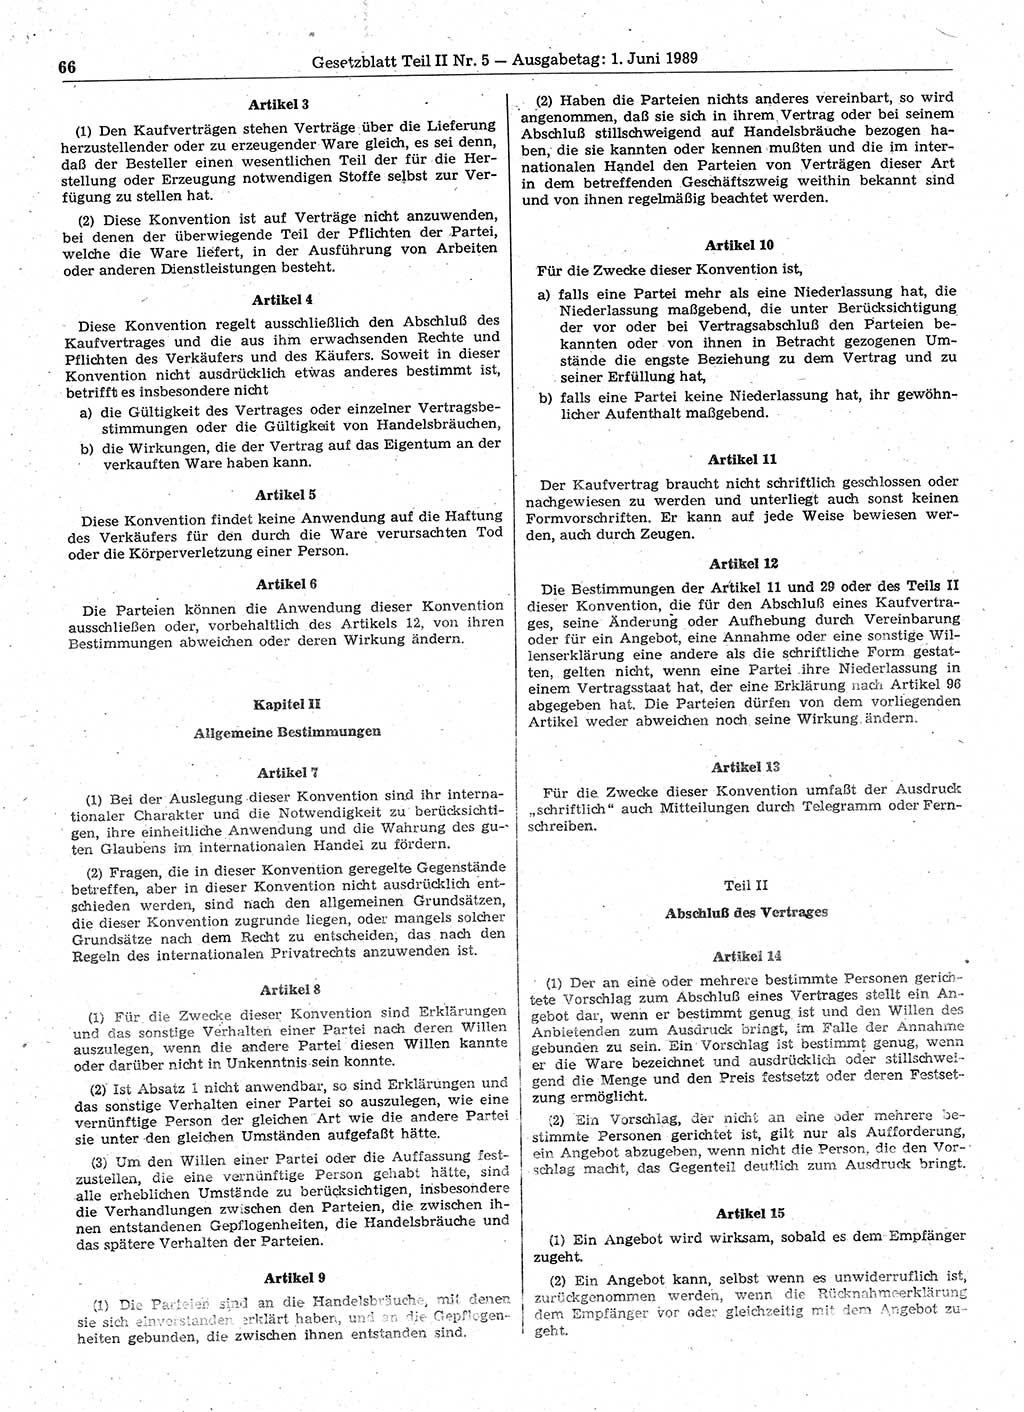 Gesetzblatt (GBl.) der Deutschen Demokratischen Republik (DDR) Teil ⅠⅠ 1989, Seite 66 (GBl. DDR ⅠⅠ 1989, S. 66)